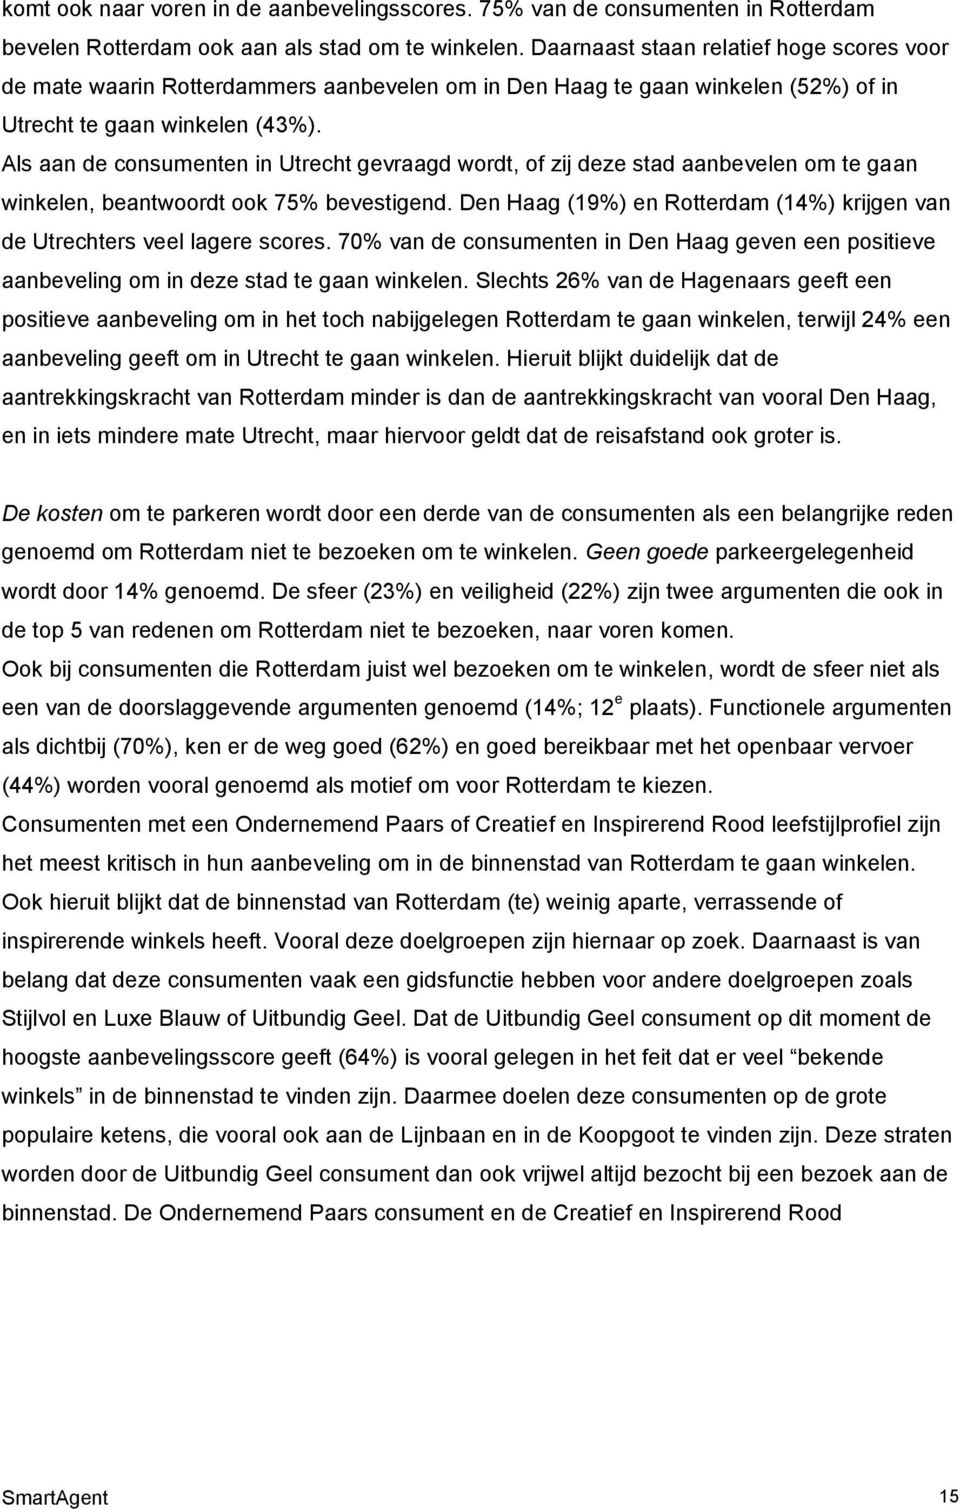 Als aan de consumenten in Utrecht gevraagd wordt, of zij deze stad aanbevelen om te gaan winkelen, beantwoordt ook 75% bevestigend.